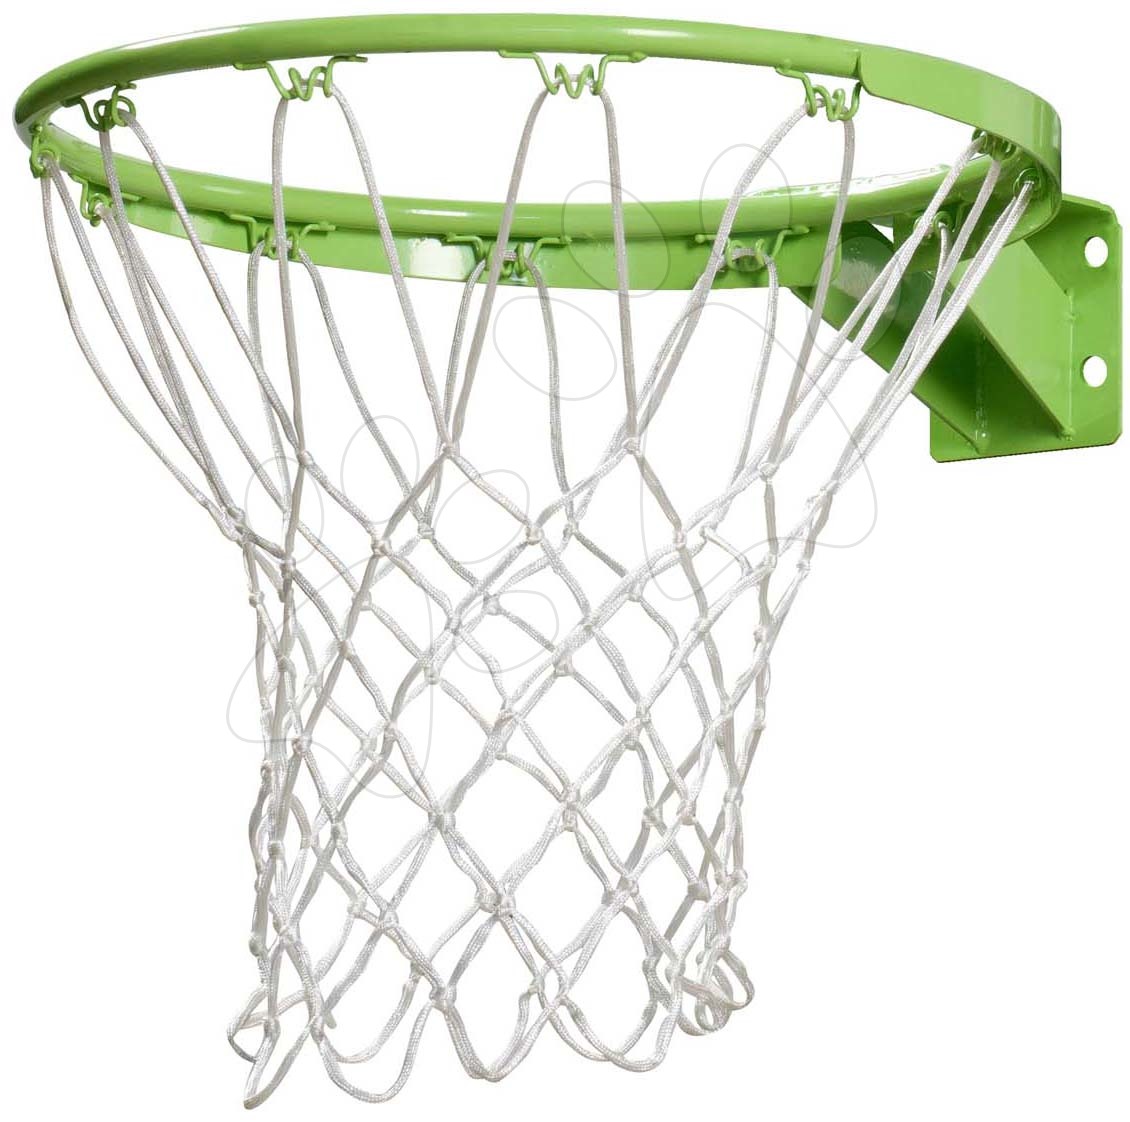 Kosárlabda kosár Galaxy basketball hoop and ring Exit Toys zöld